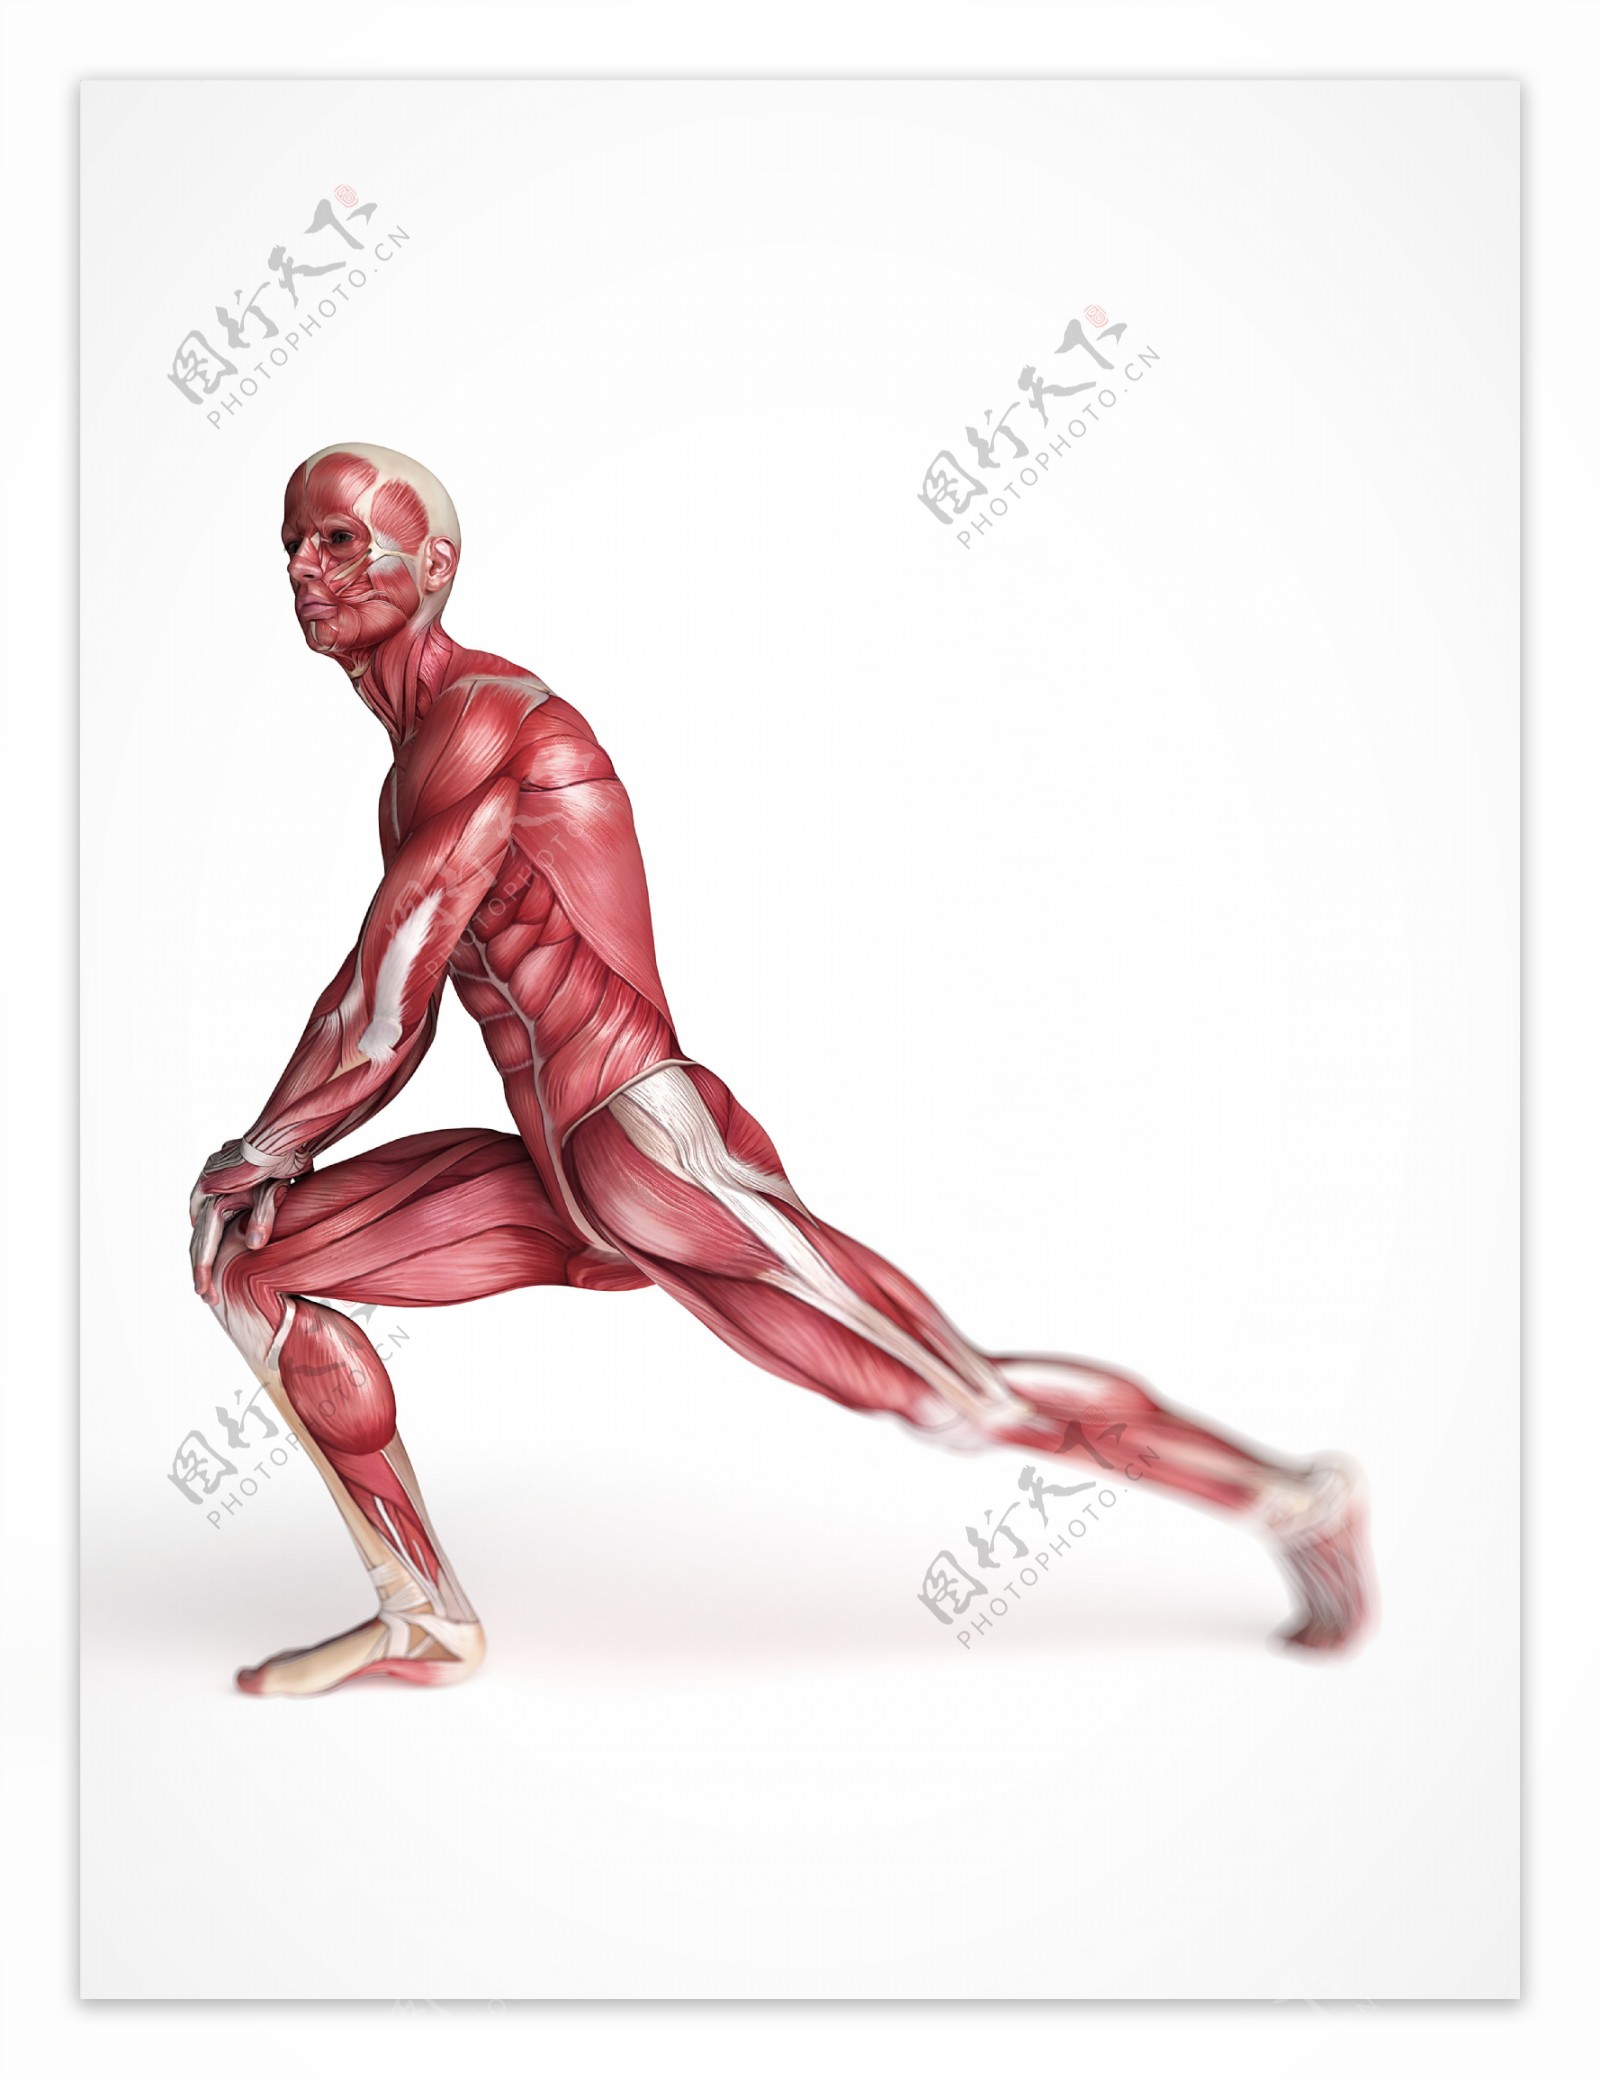 男性肌肉器官图片